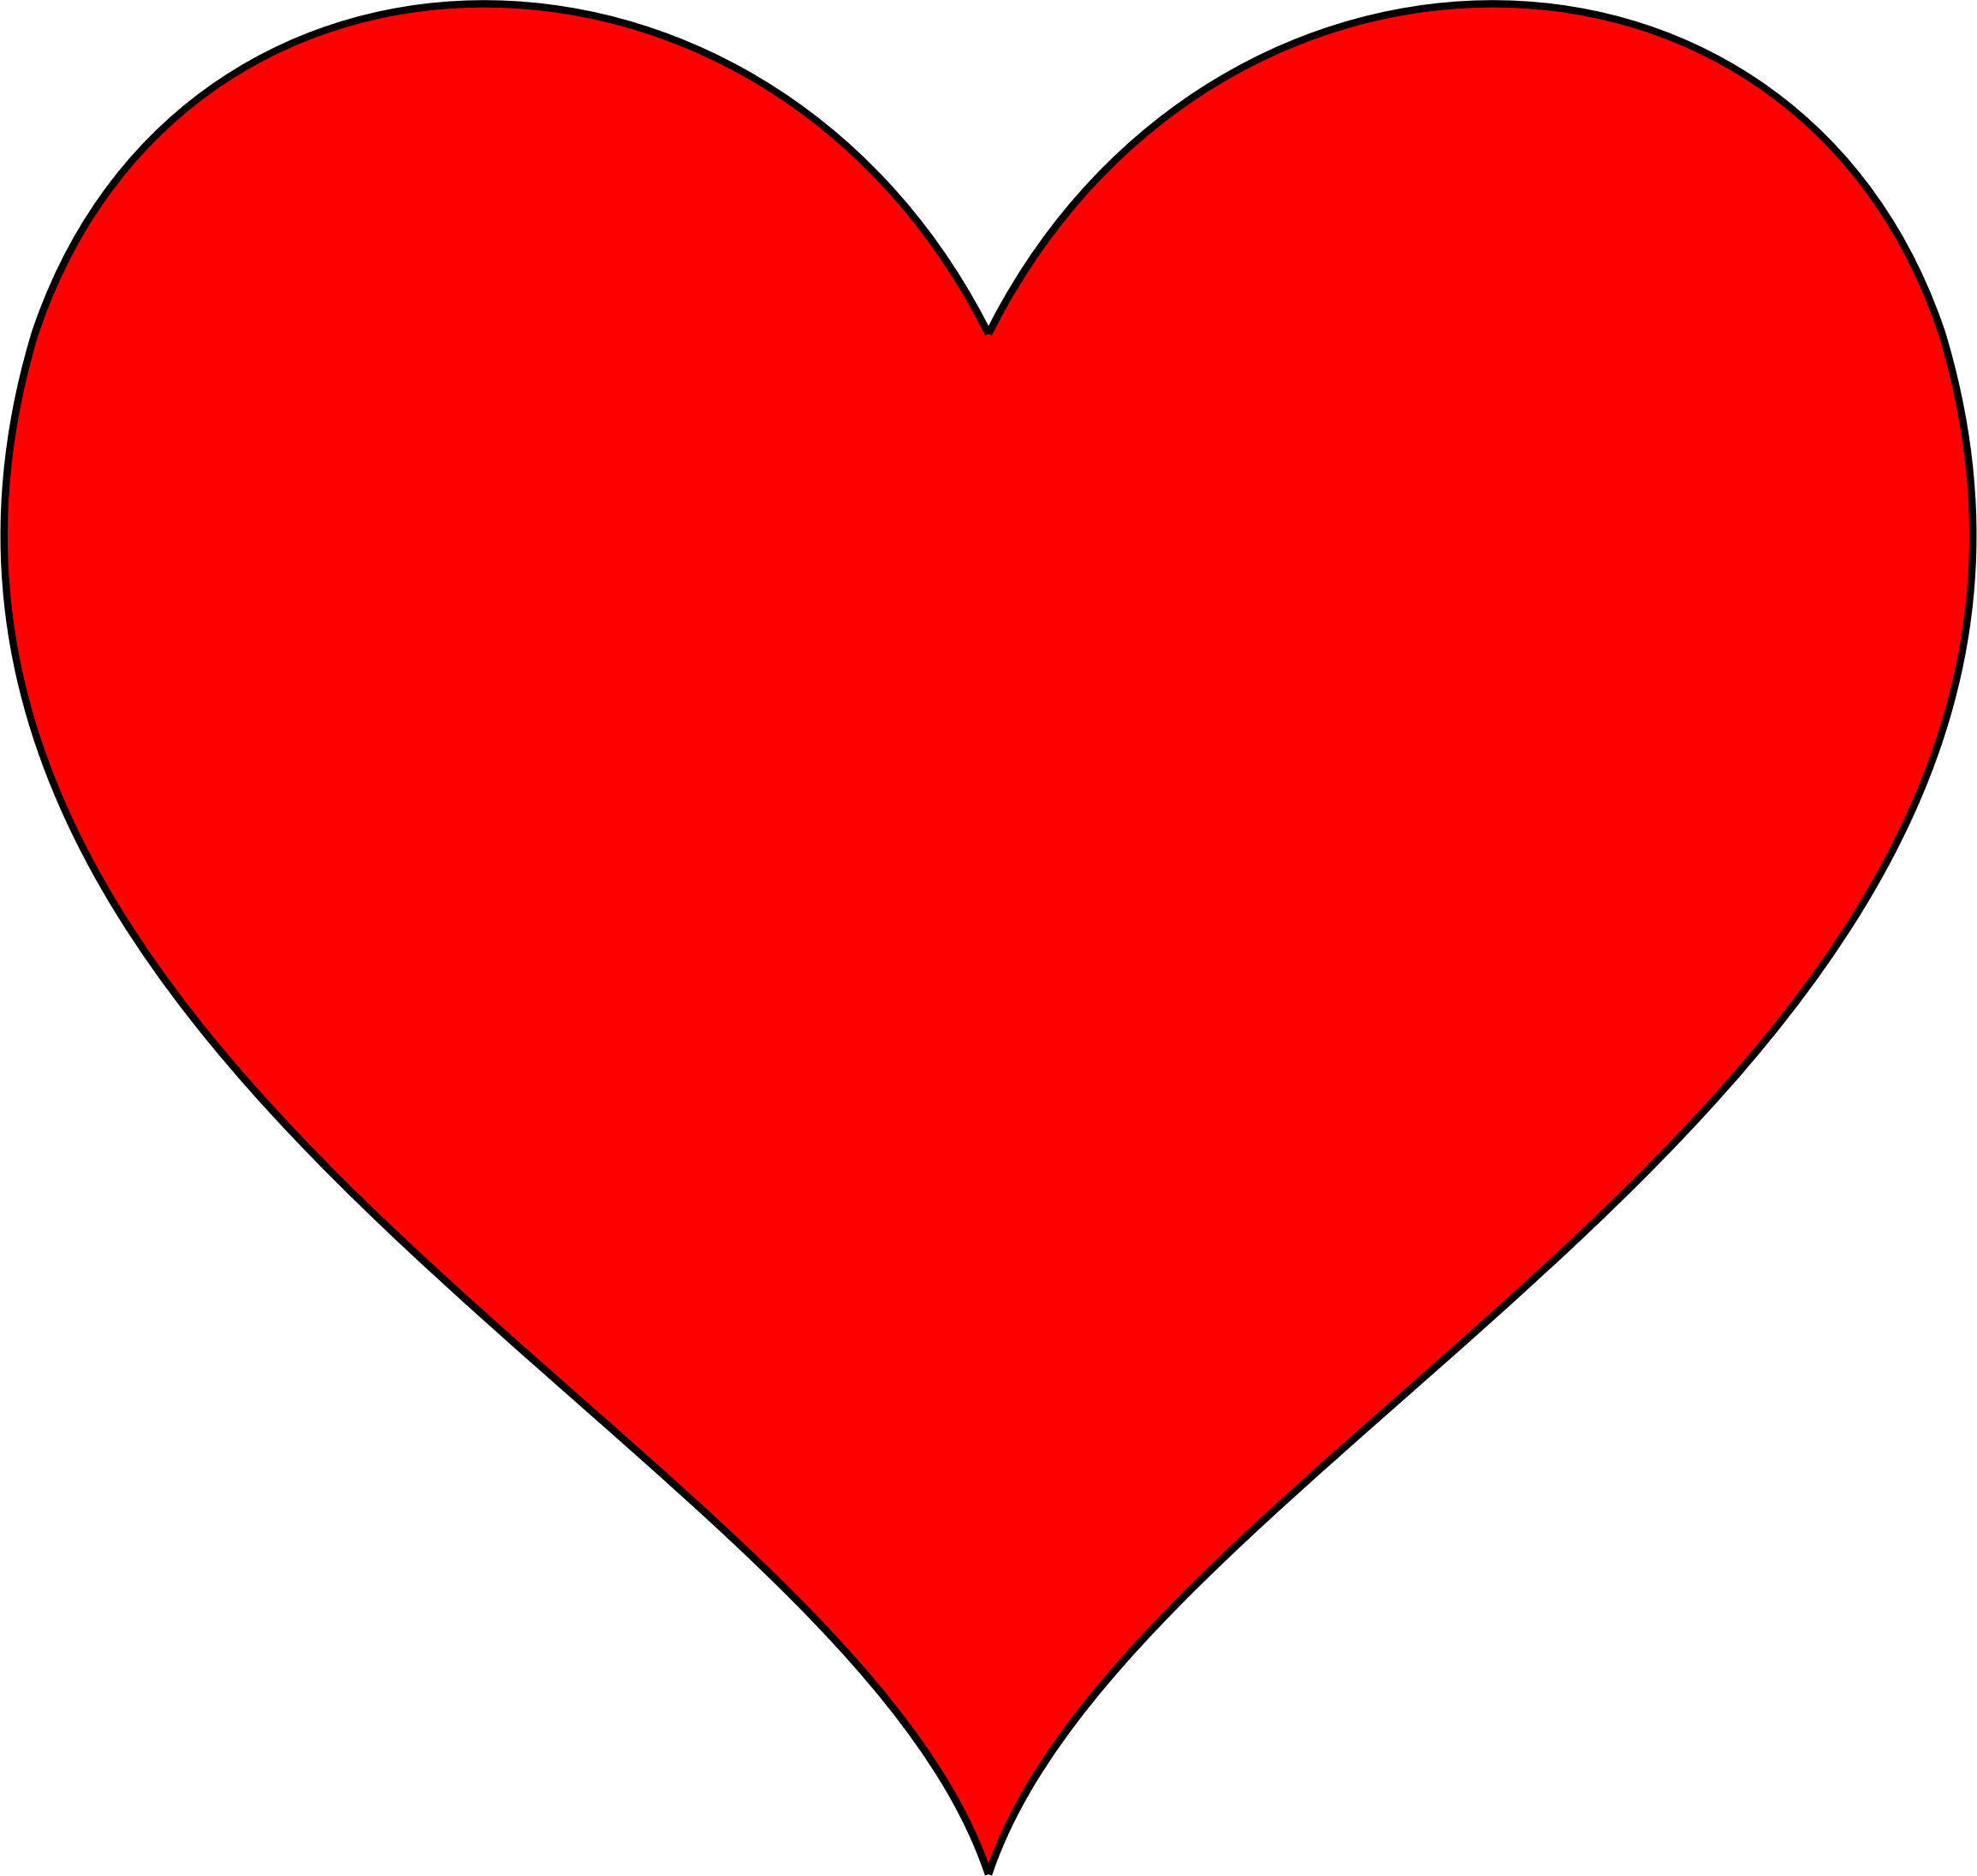 Símbolo del corazón rojo transparente